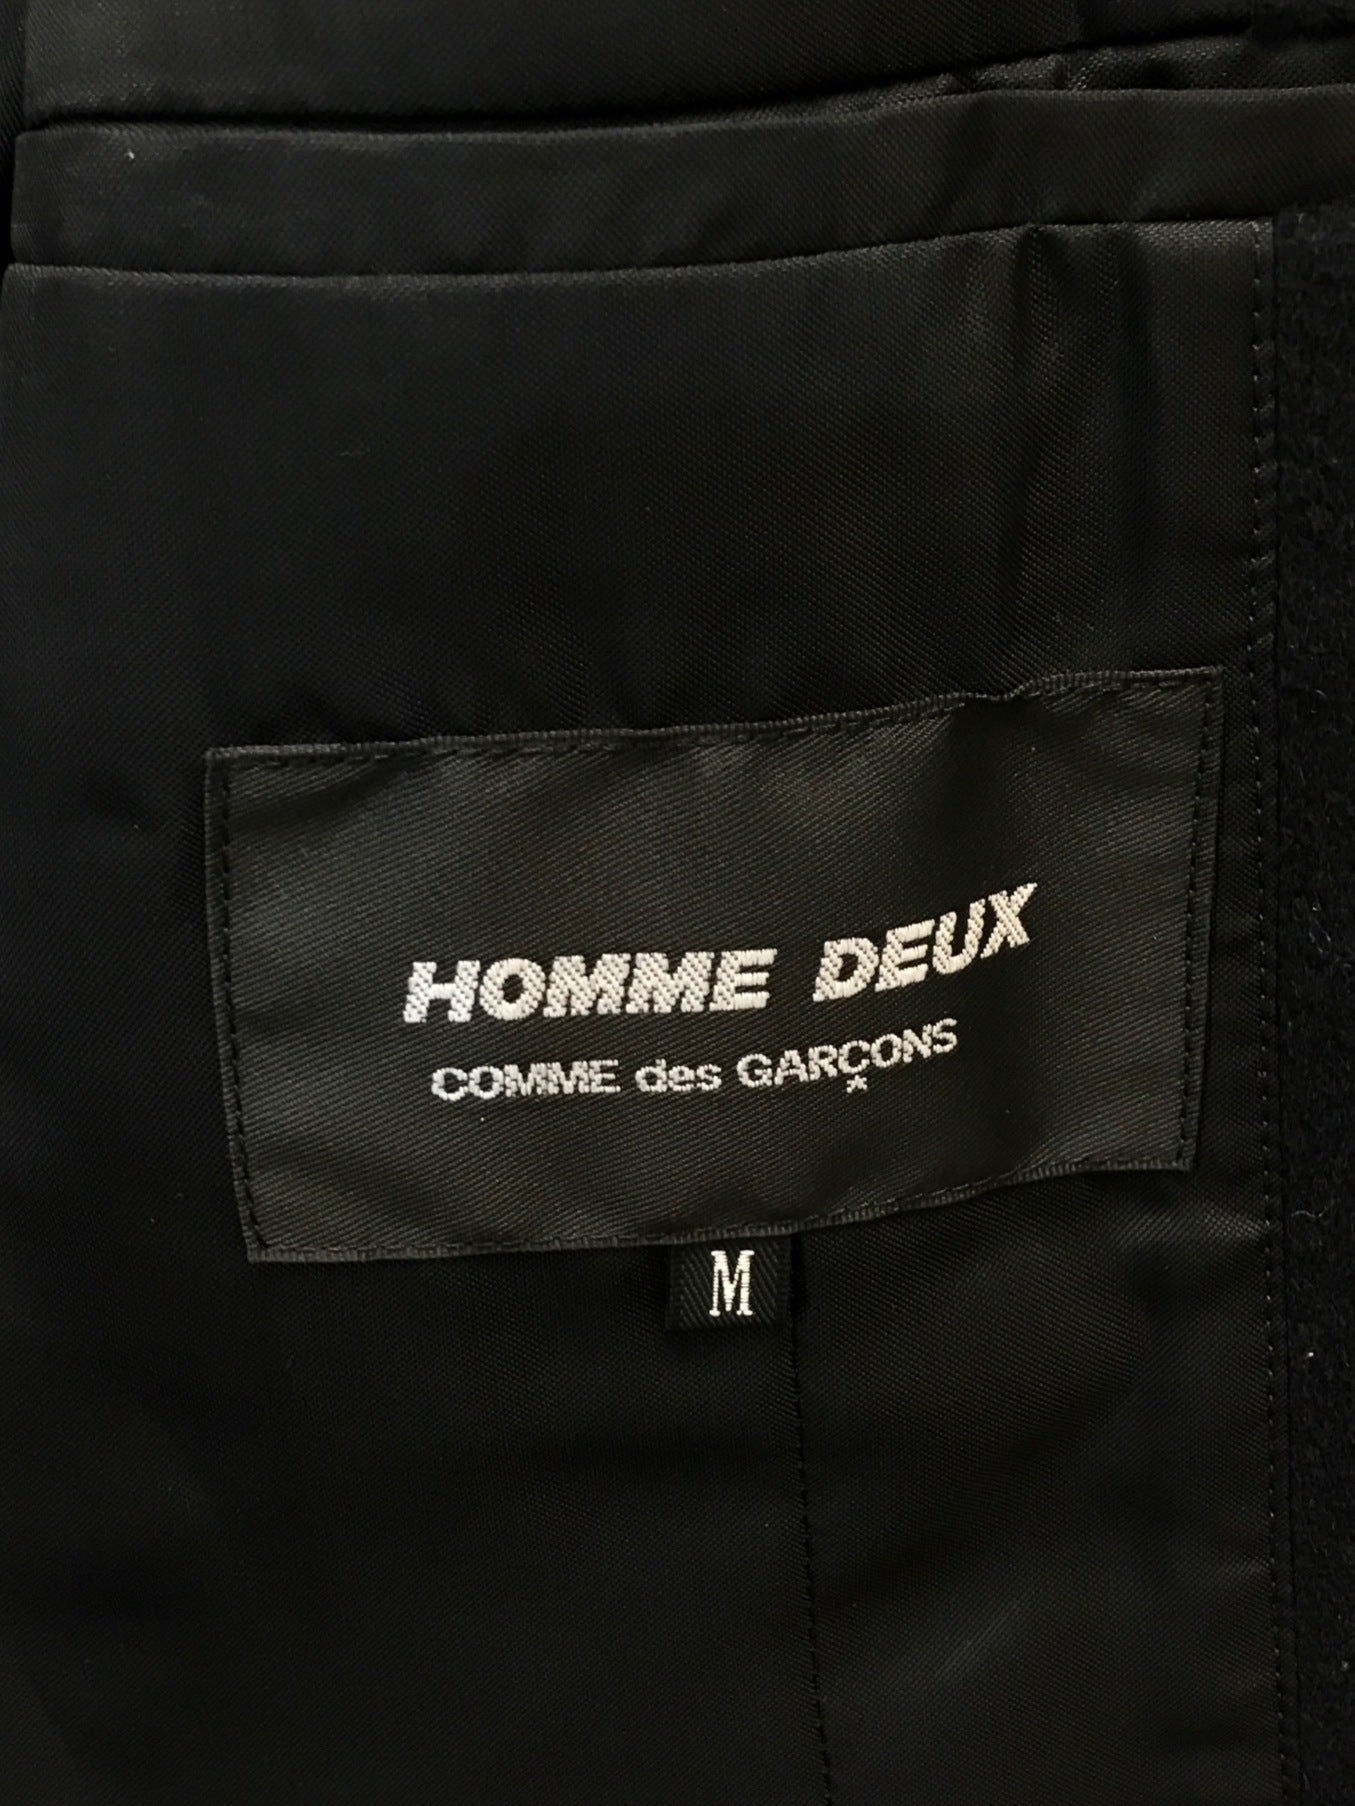 [Pre-owned] COMME des GARCONS HOMME DEUX Cashmere Blend Chester Coat Tailored Coat DR-C002